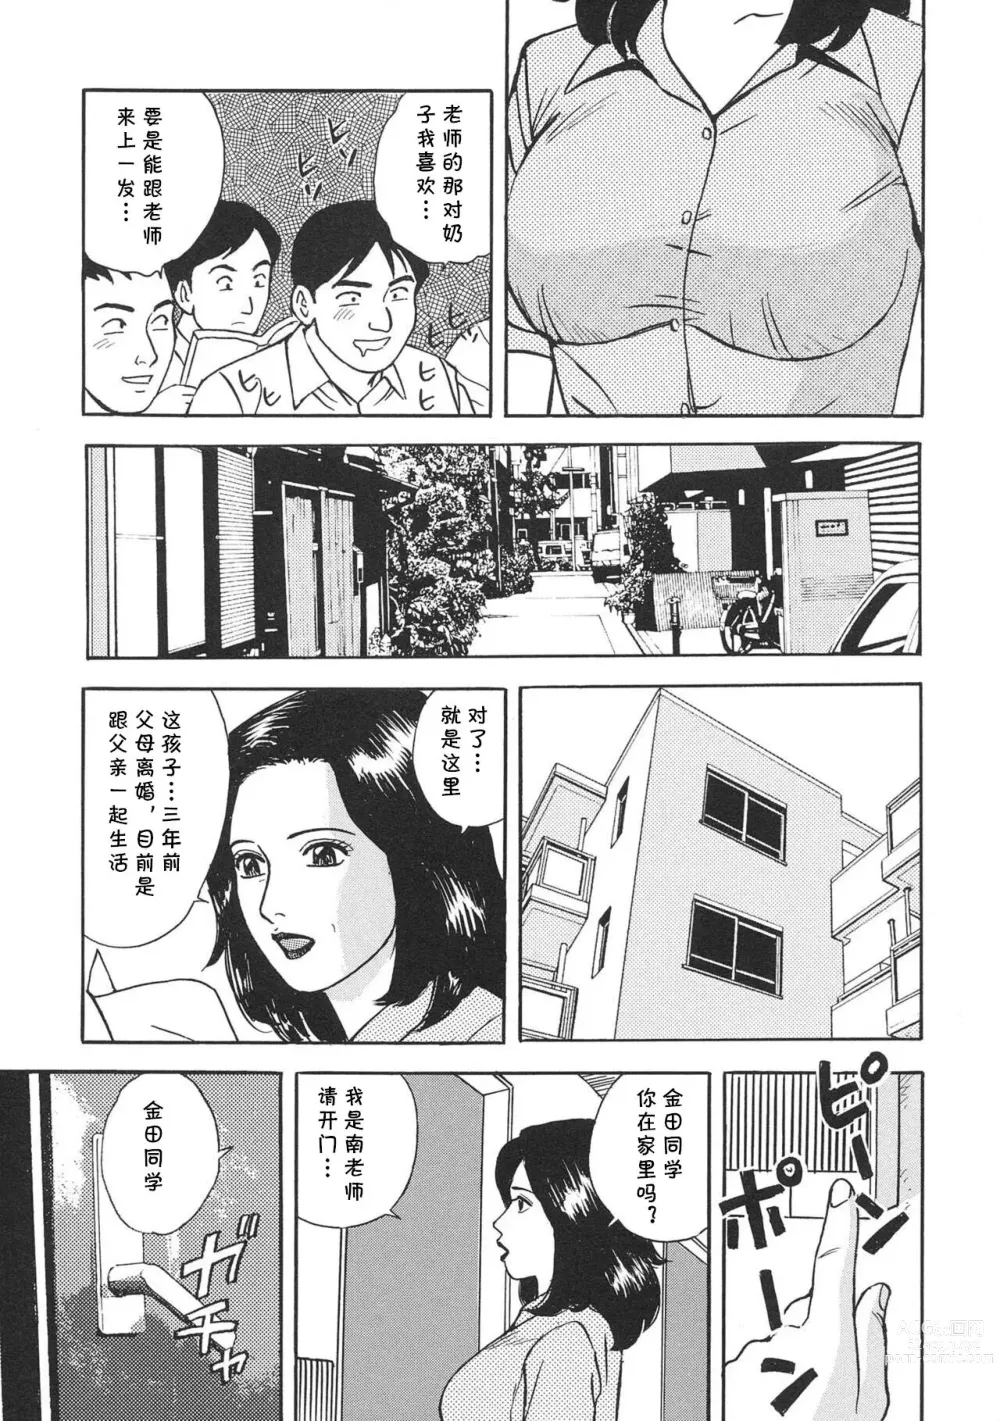 Page 3 of manga Gokuin Onna Kyoushi no Seikatsu Shidou